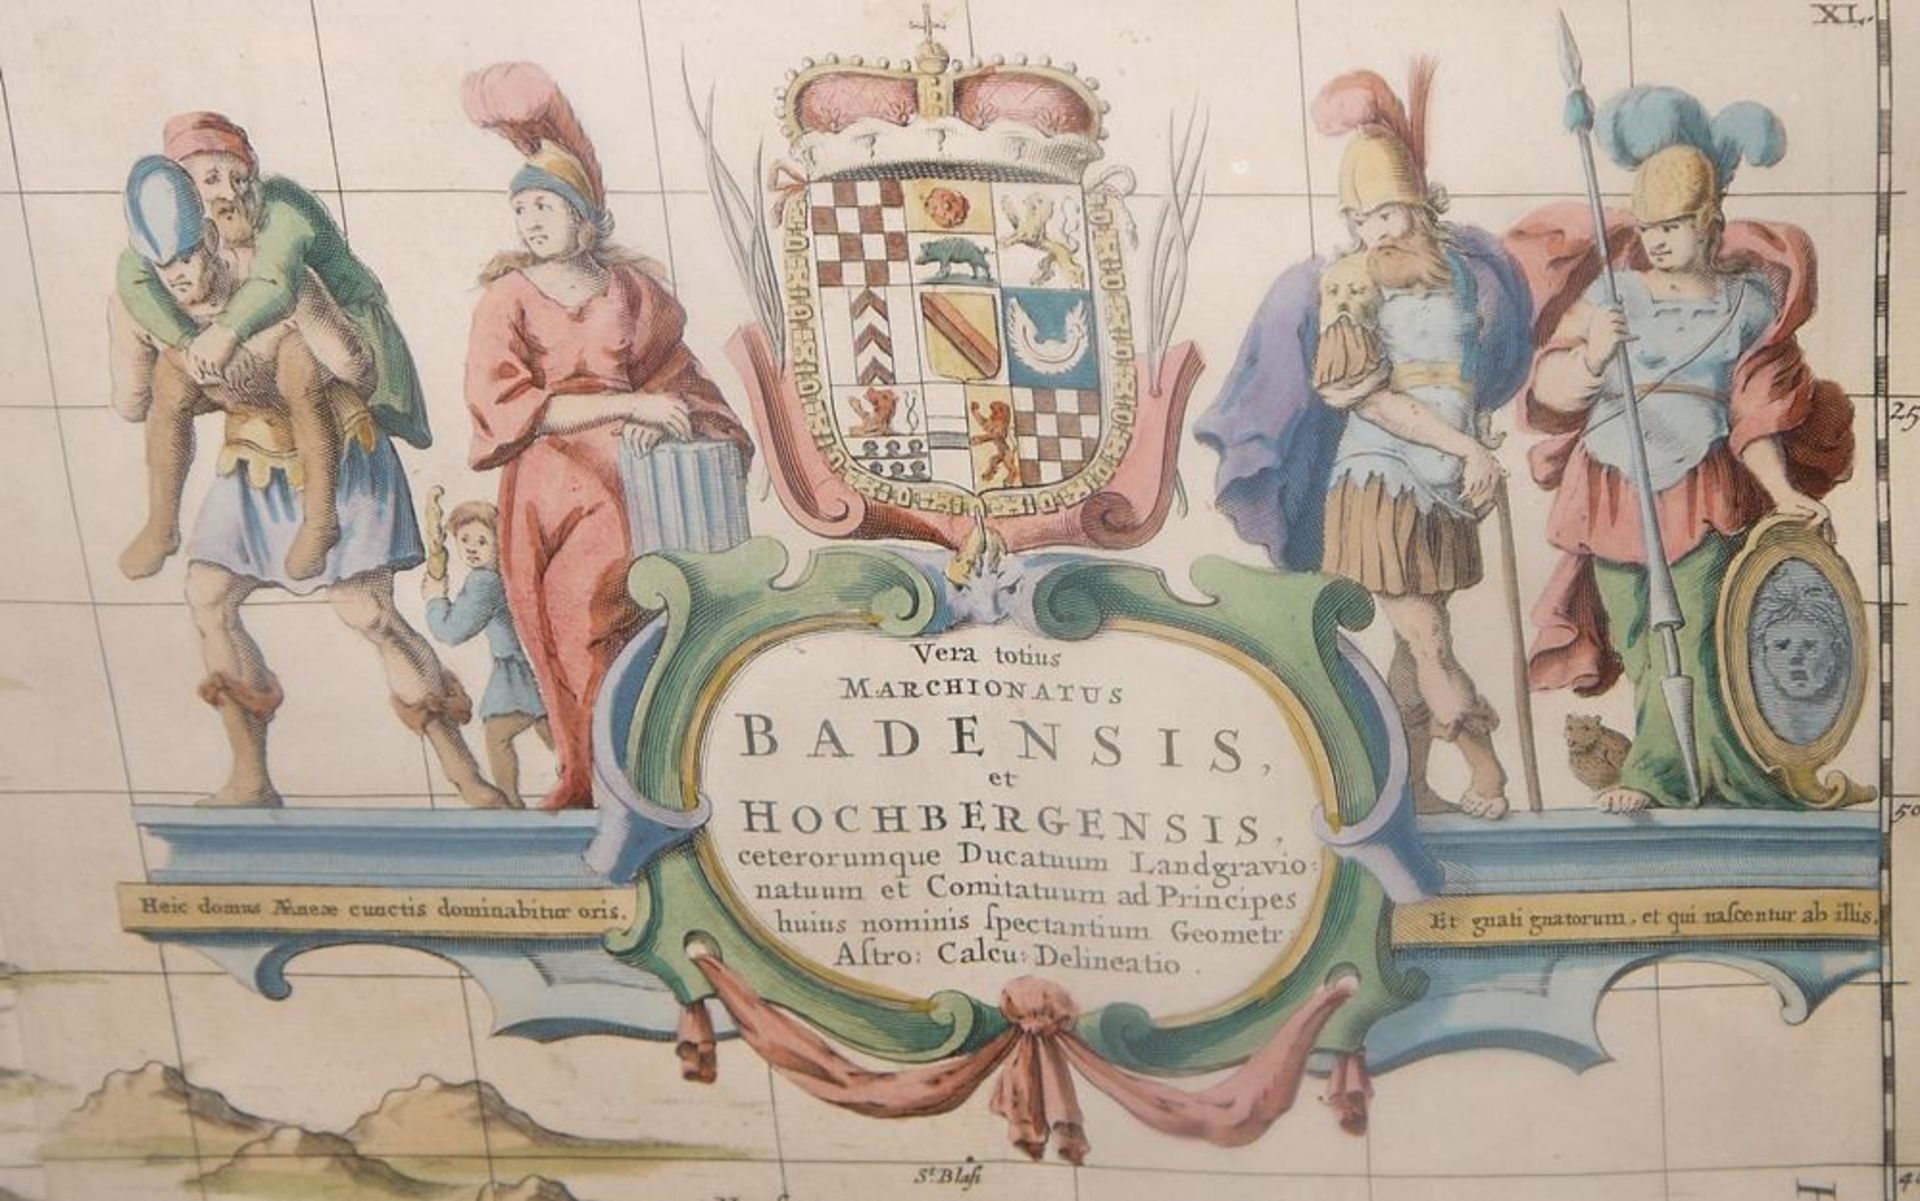 "Vera totius Marchionatus Badensis et Hochbergensis...", altkolorierte Kupferstichkarte von Baden, - Bild 3 aus 3